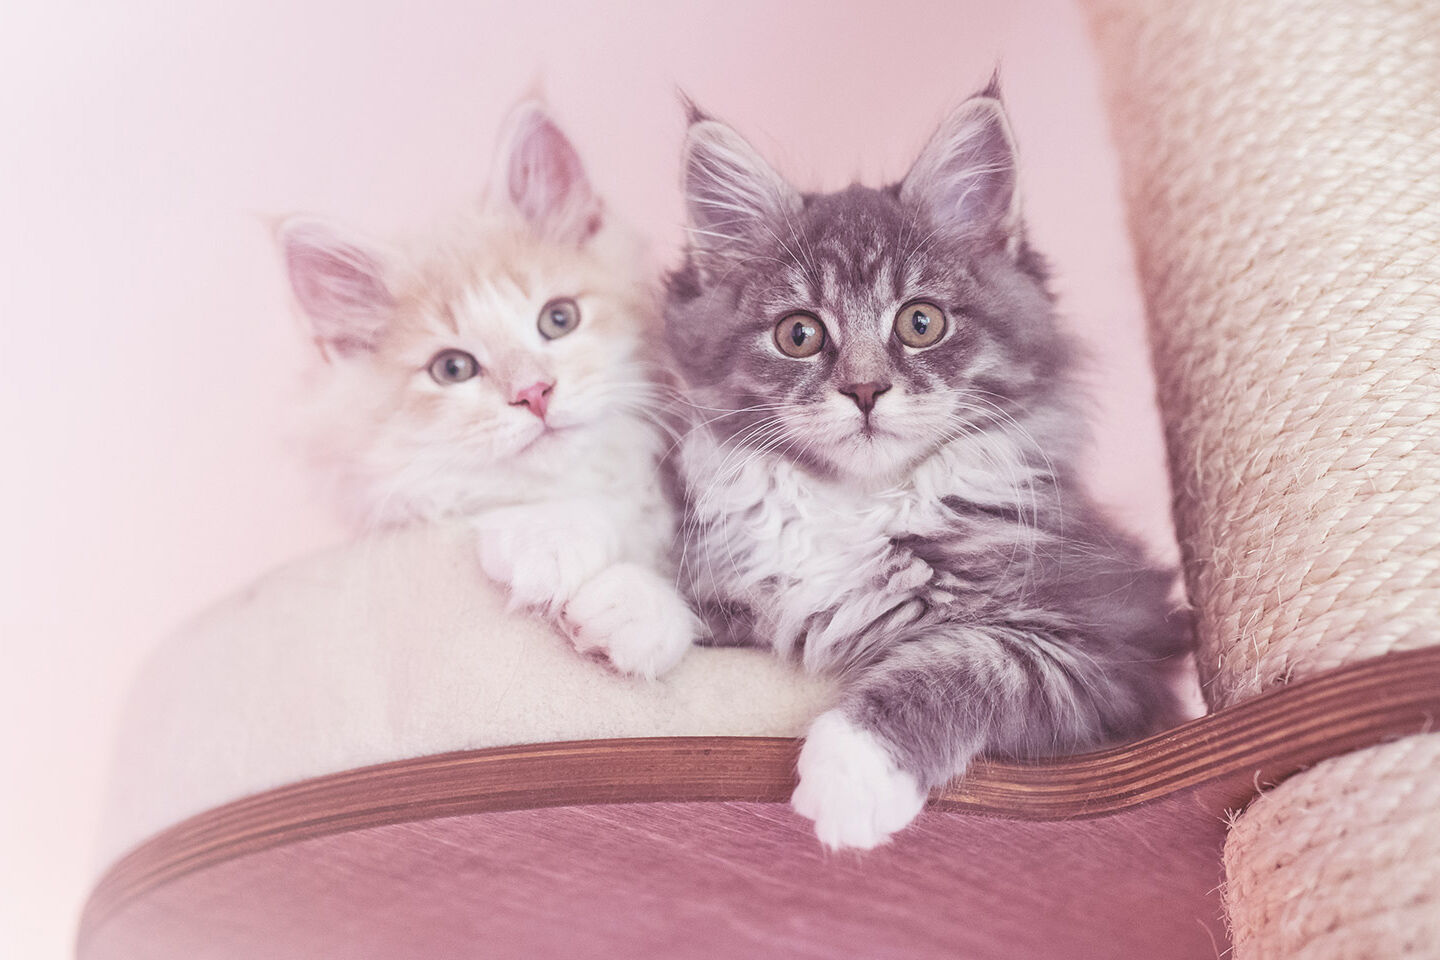 Zwei Kitten sitzen auf einem Kratzbaum und schauen interessiert nach unten